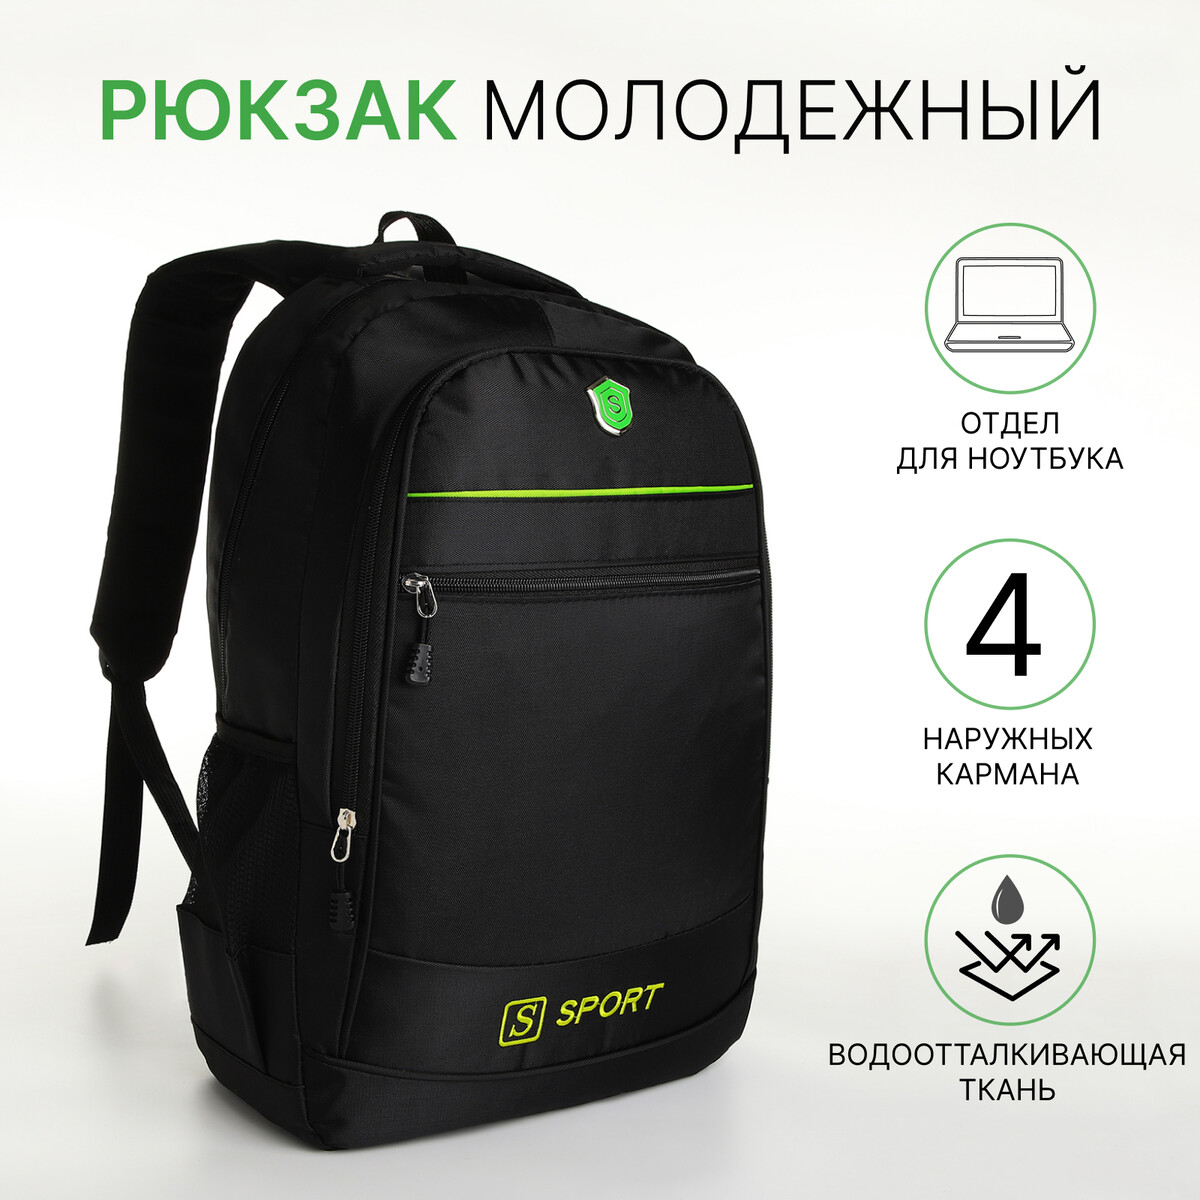 Рюкзак молодежный на молнии, 4 кармана, цвет черный/зеленый рюкзак школьный из текстиля на молнии 3 кармана пенал зеленый